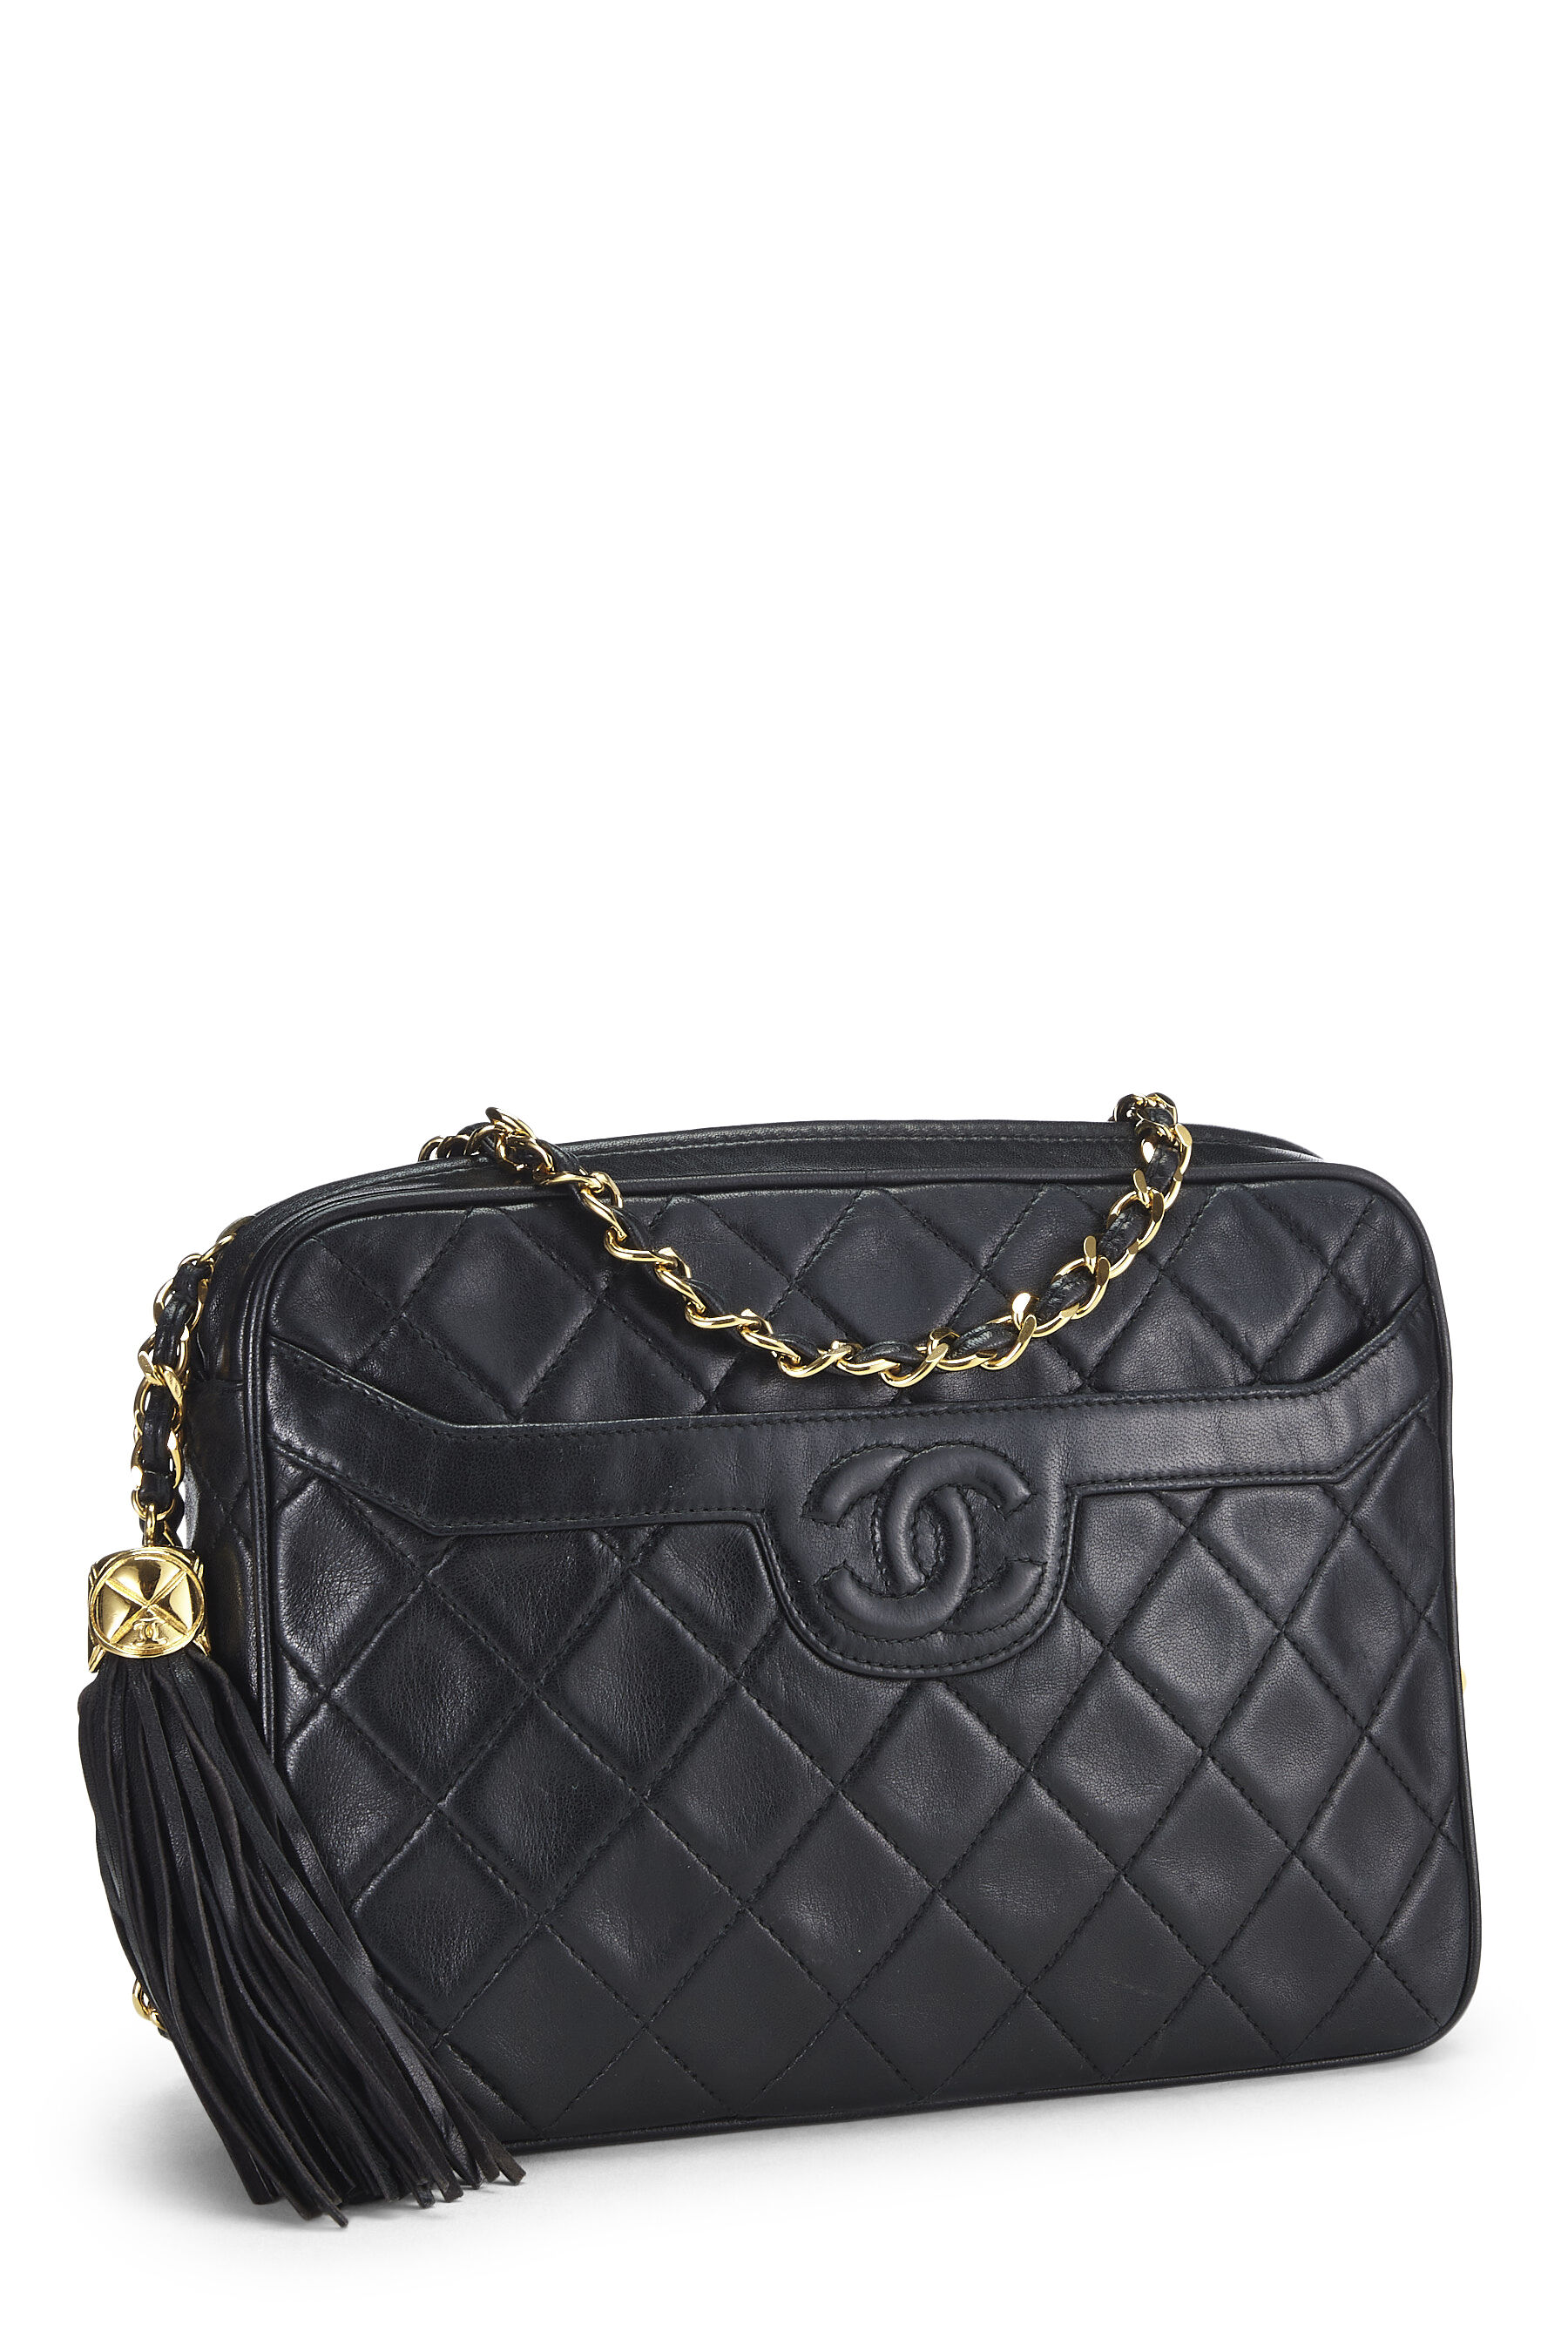 Chanel - Black Quilted Lambskin Pocket Camera Bag Medium